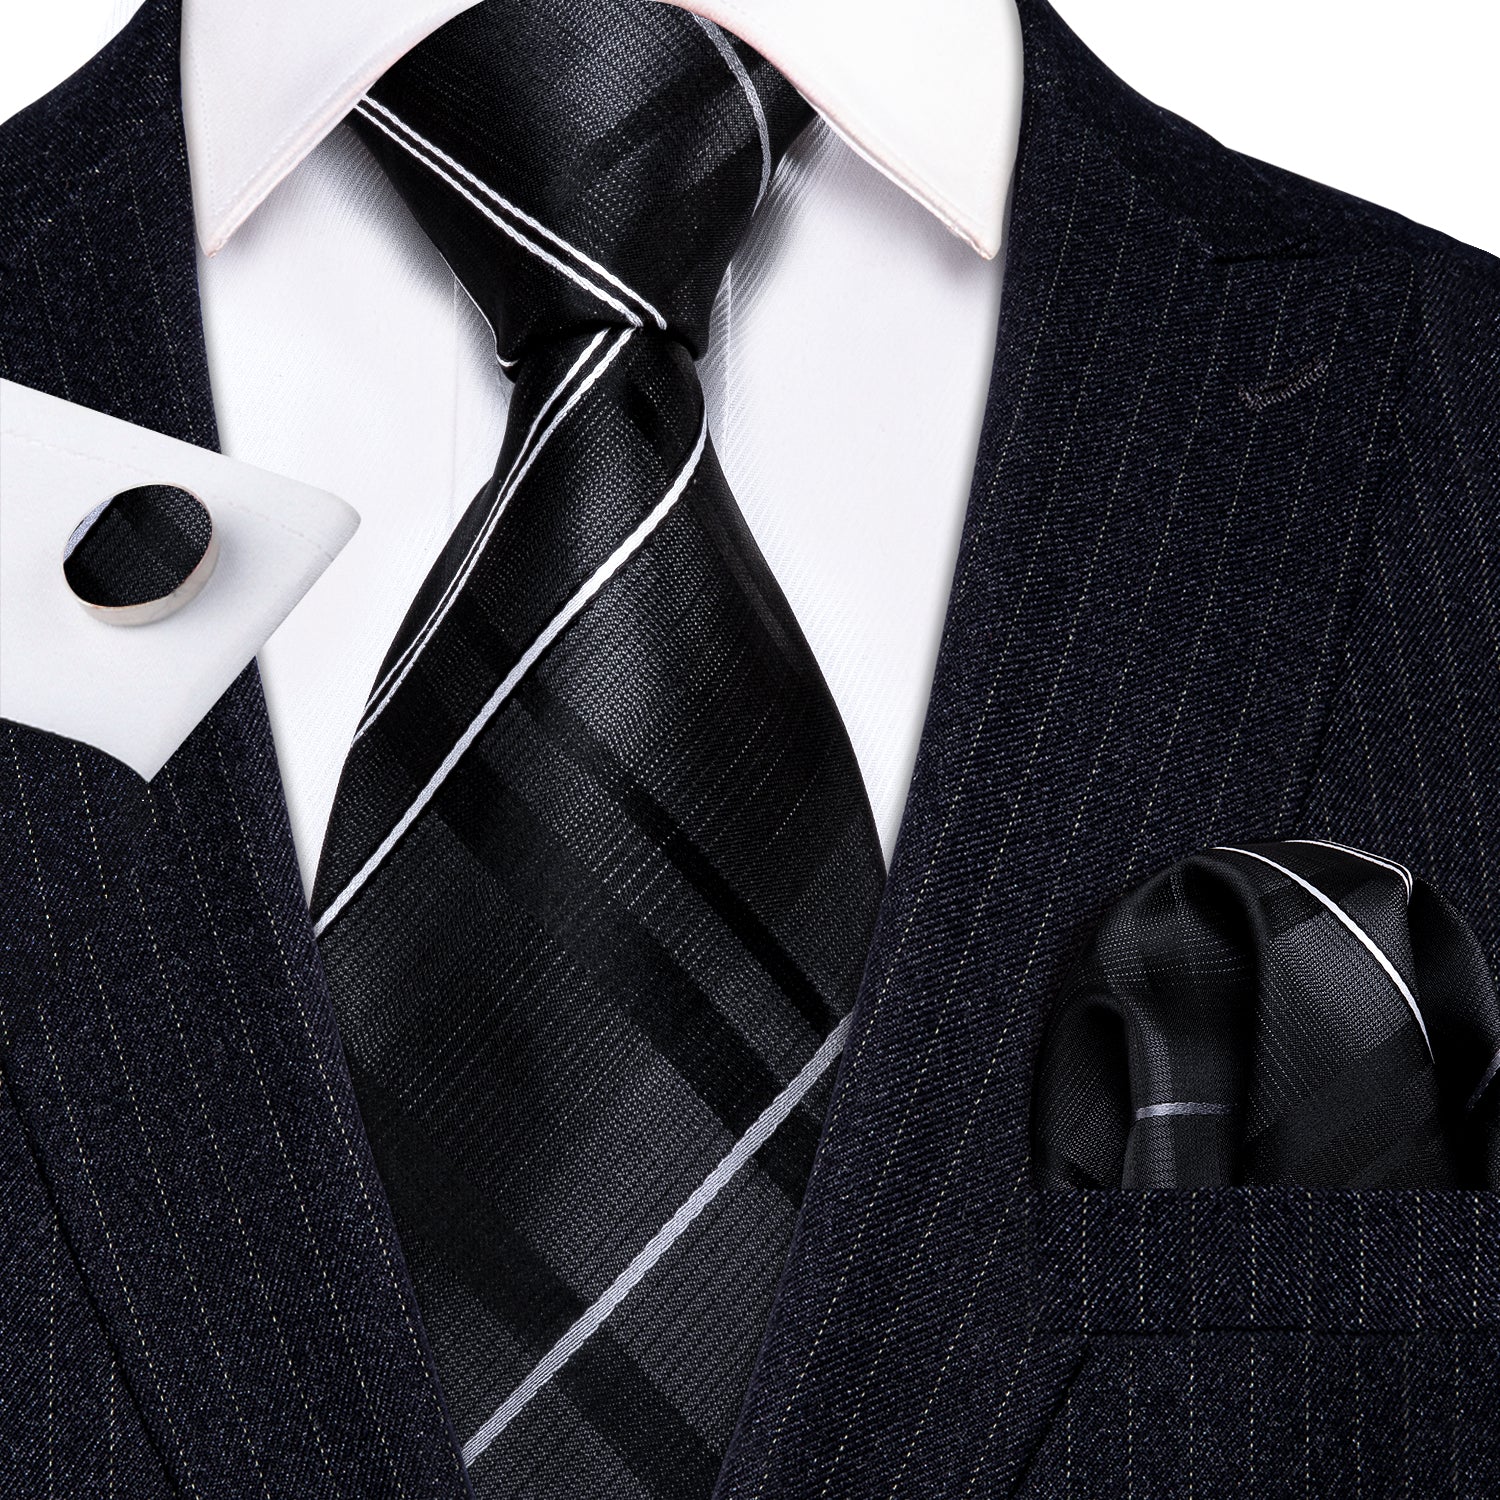 Sliver Grey Striped 100% Silk Tie Hanky Cufflinks Set